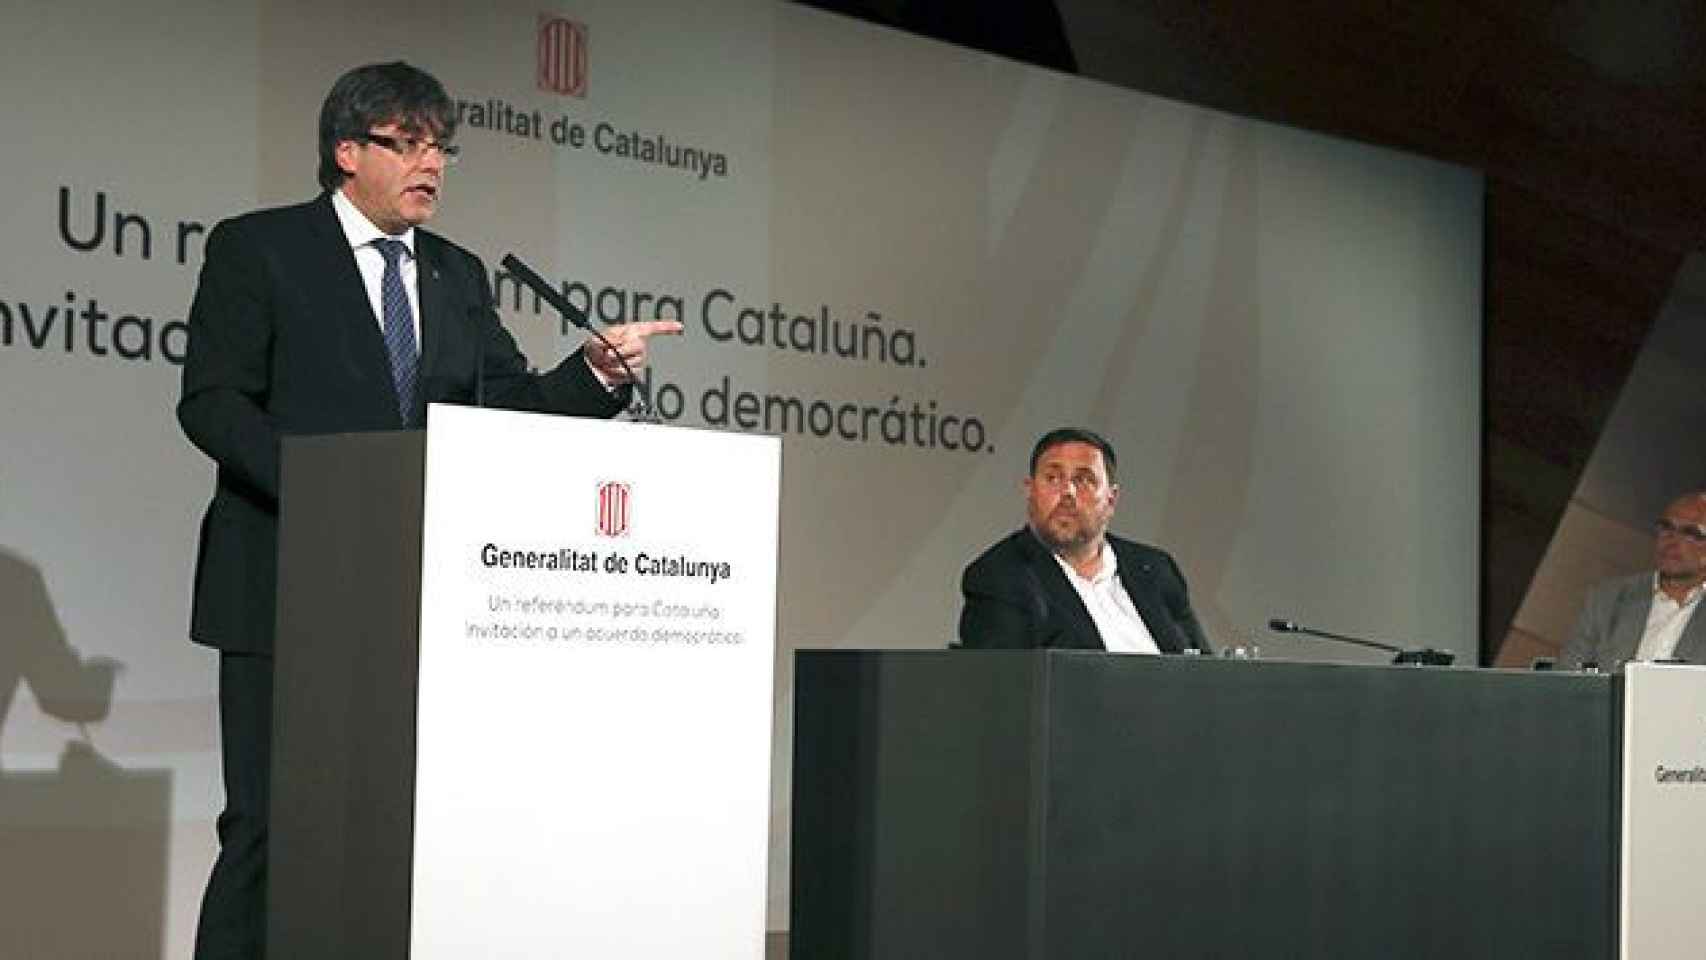 El presidente de la Generalitat, Carles Puigdemont, acompañado por el vicepresidente, Oriol Junqueras, y el consejero de Exteriores, Raül Romeva, durante su conferencia de este lunes en Madrid / EFE